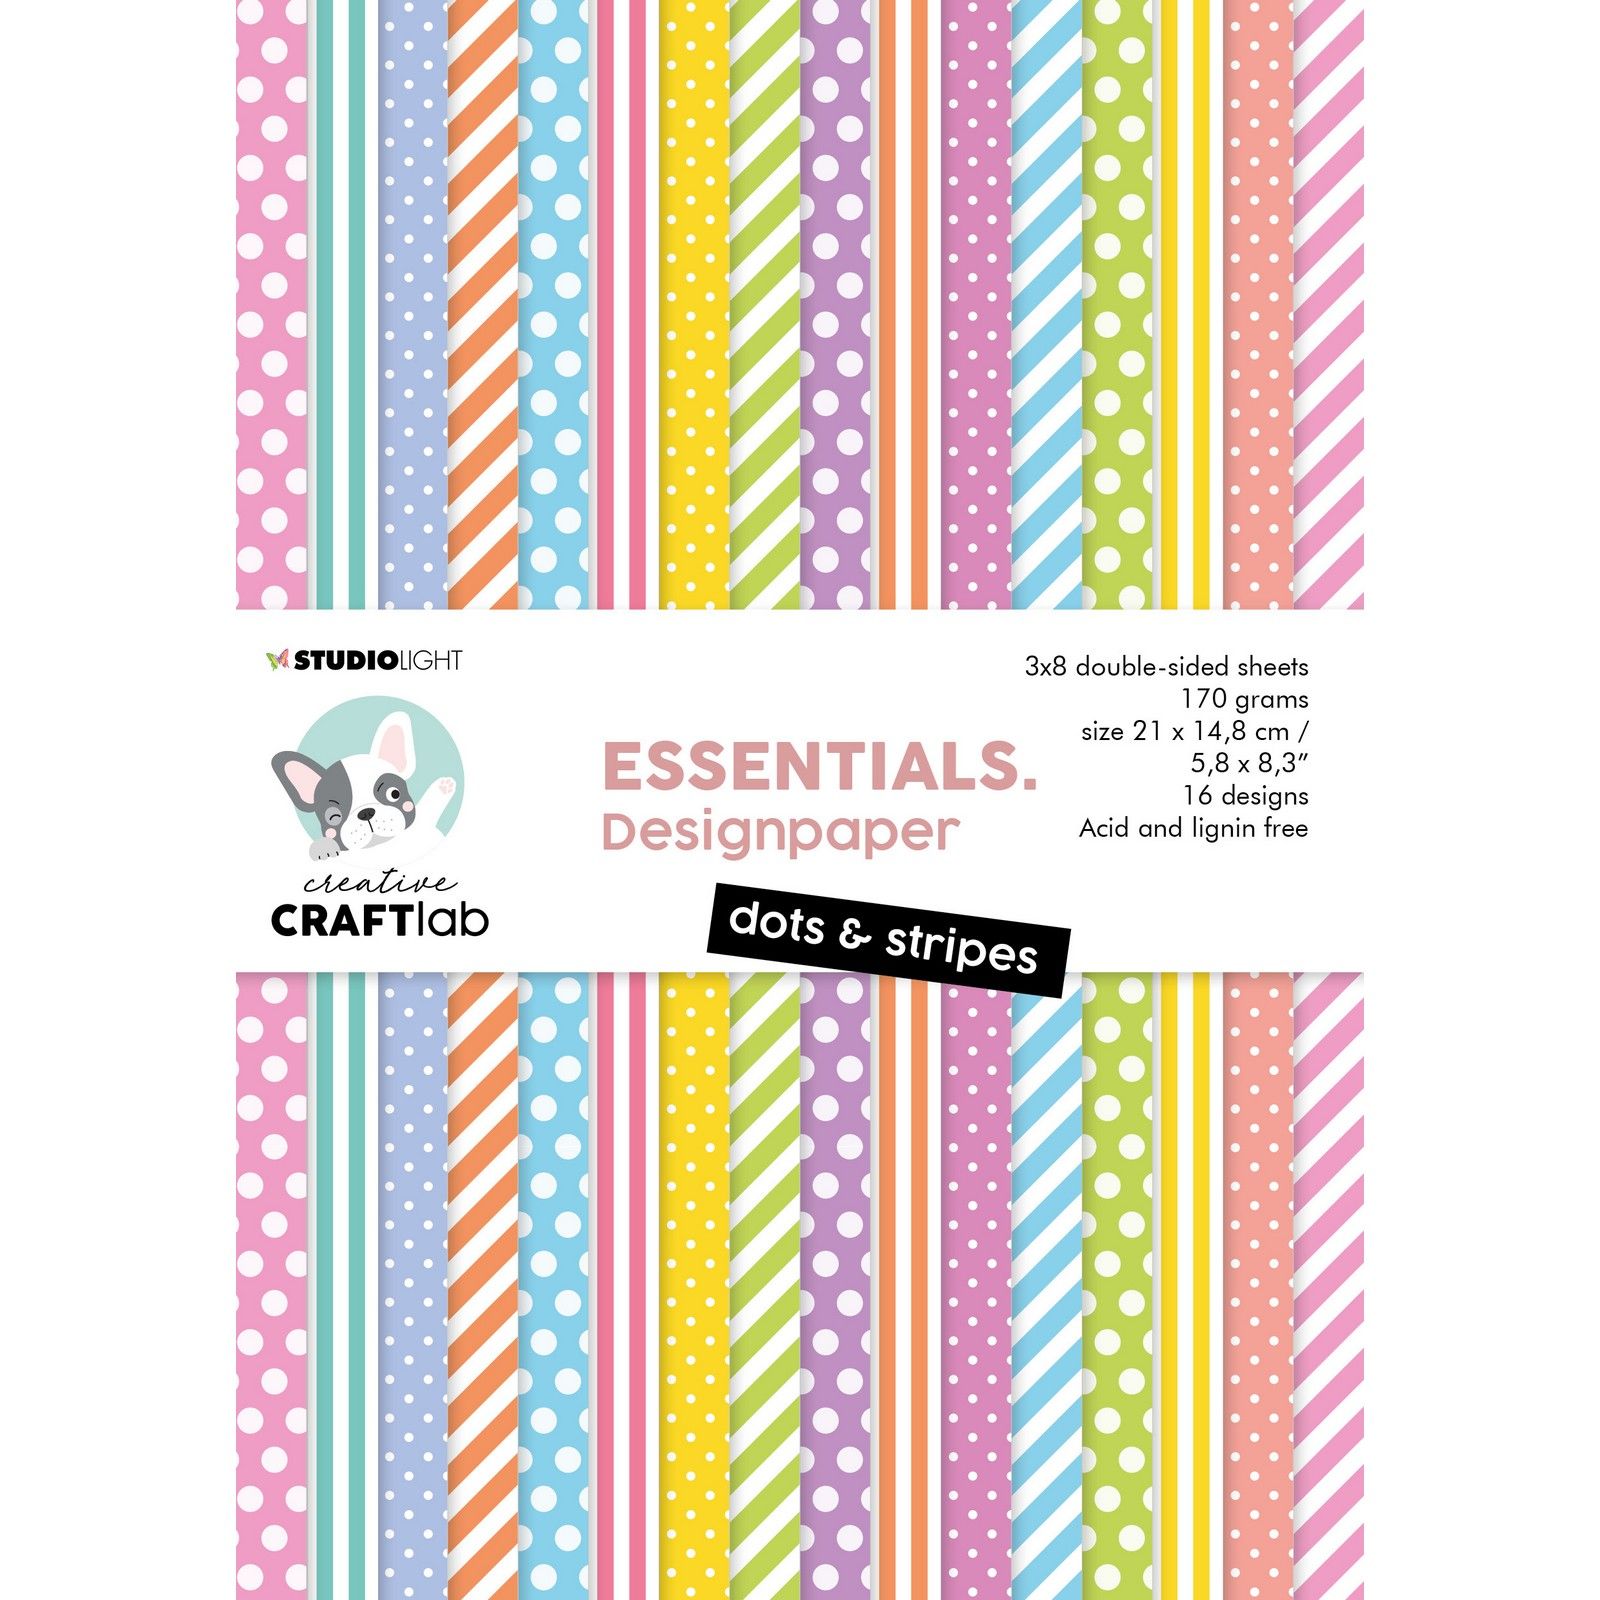 Creative Craftlab • Essentials Paper Pad Dots & Stripes